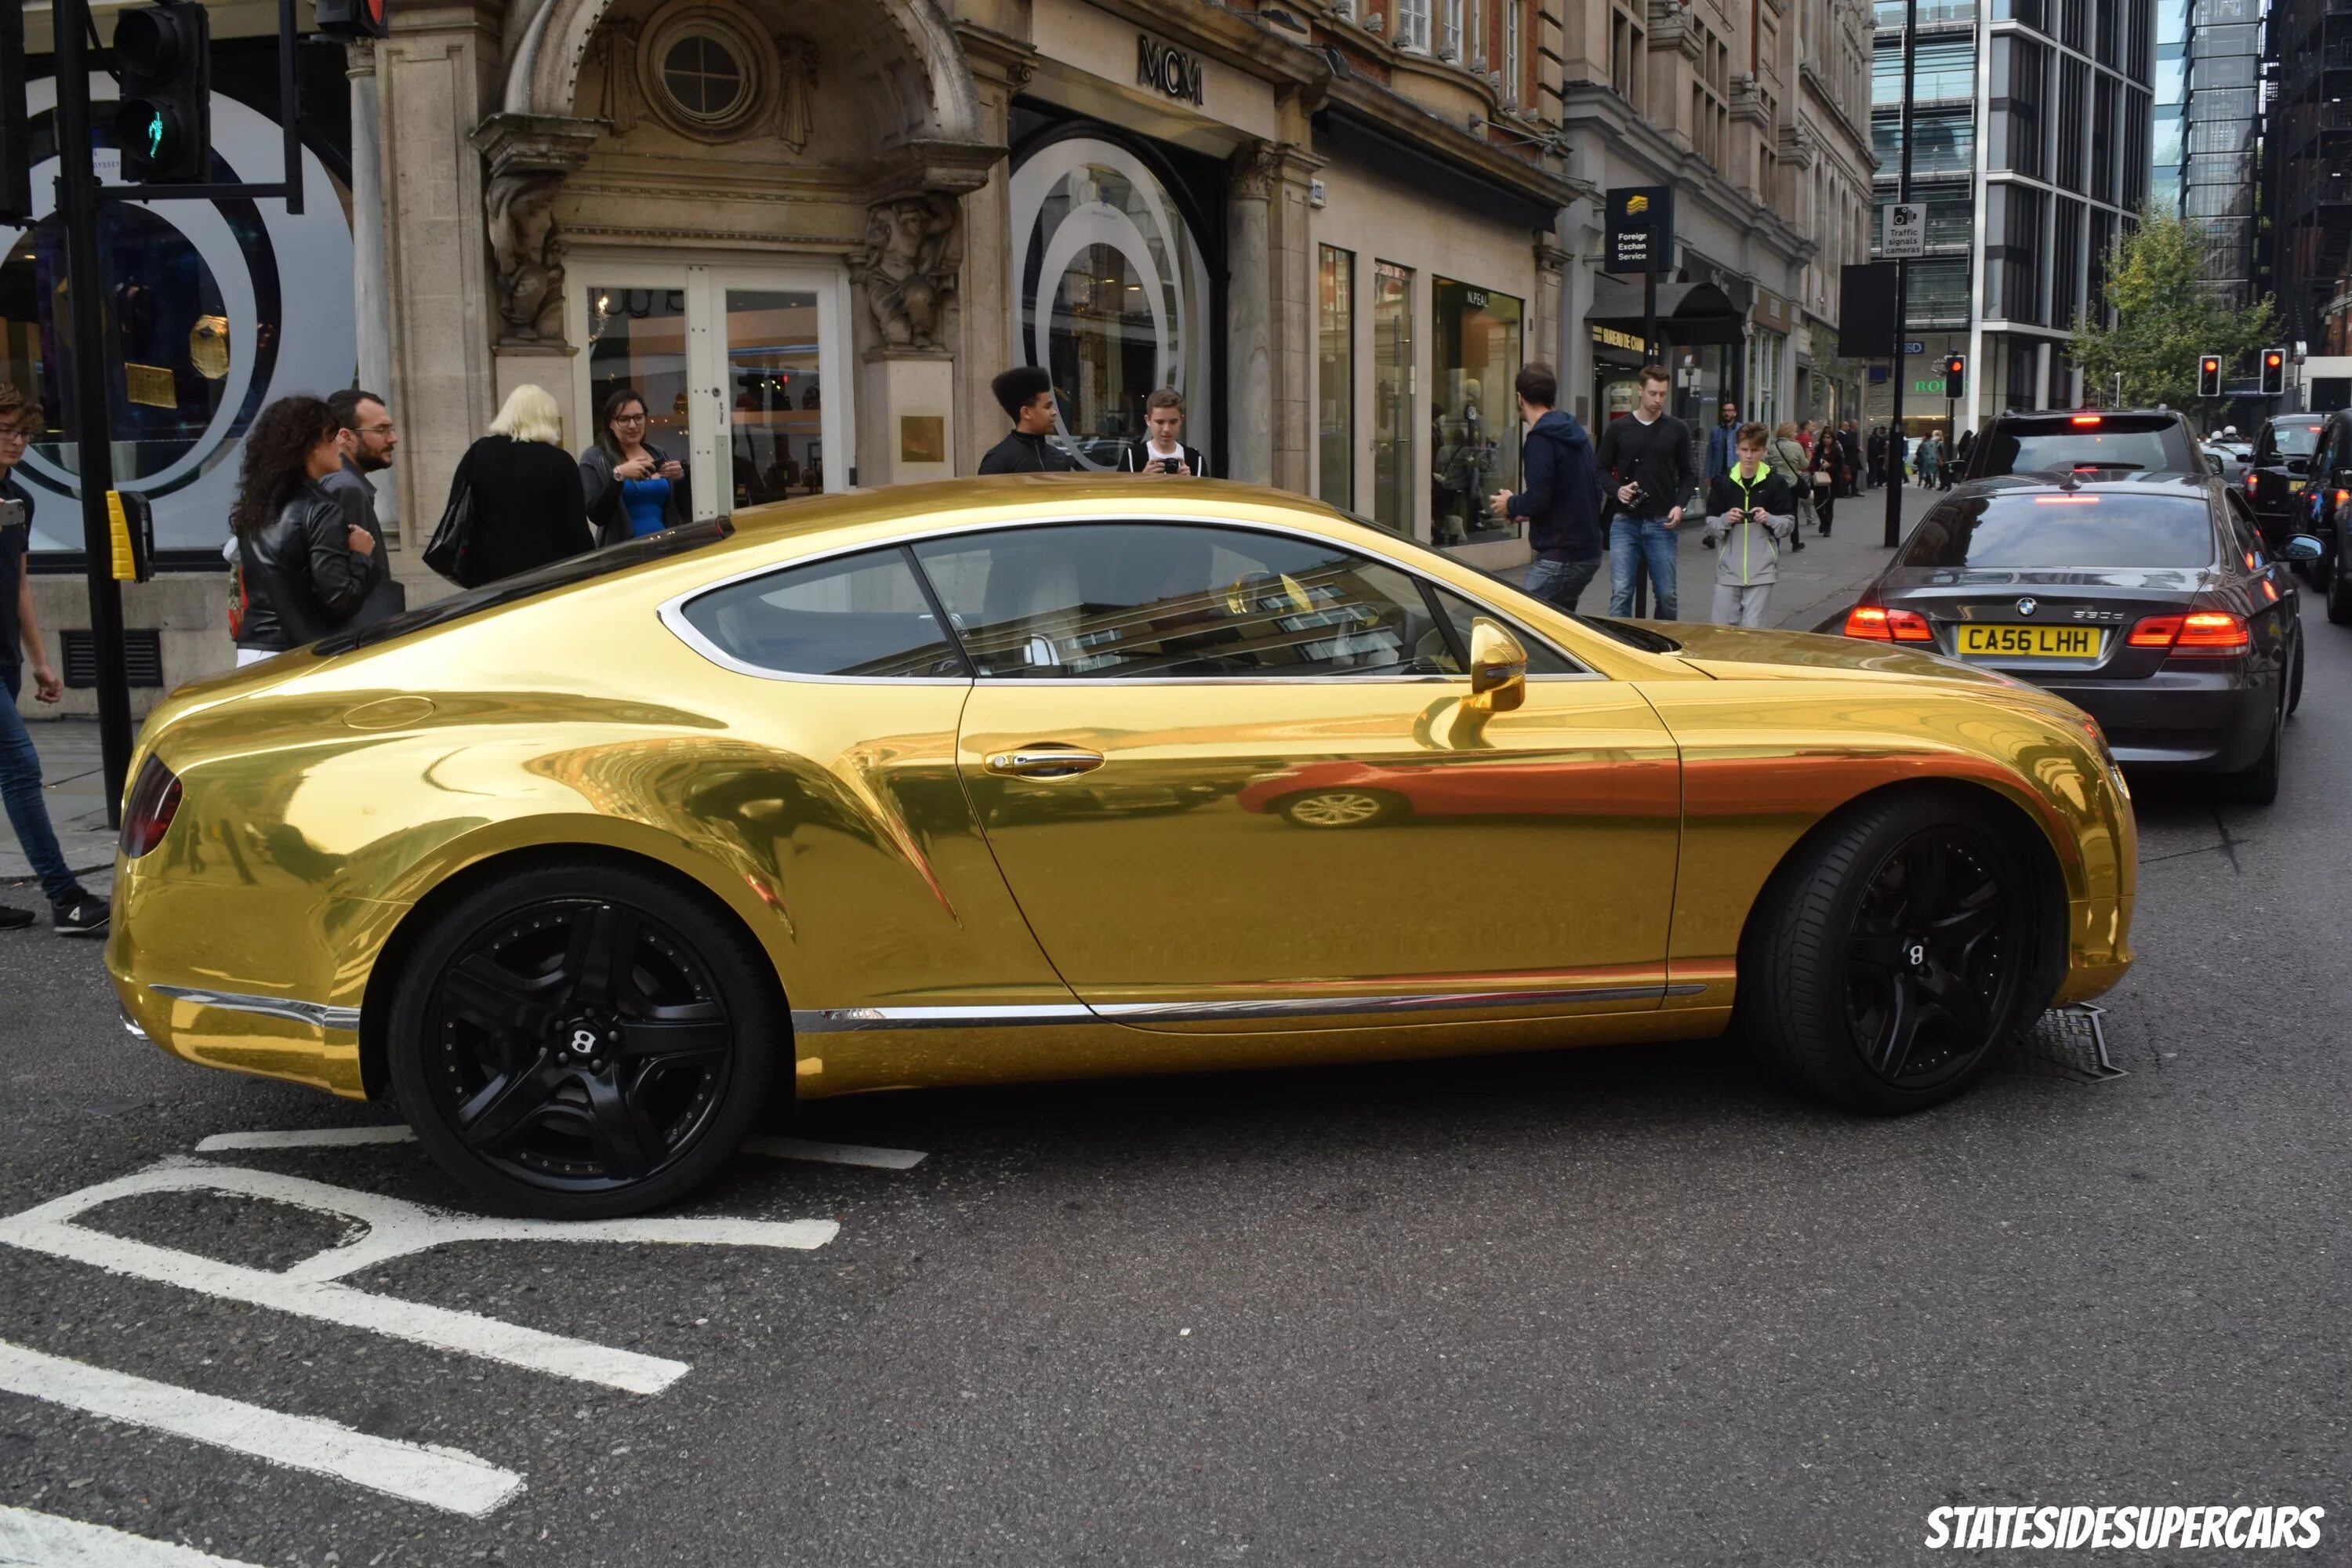 Gold car. Бентли Континенталь золотой. Bentley Bentayga Золотая. Bentley Continental gt золотистый. Золотые машины золотистого цвета.